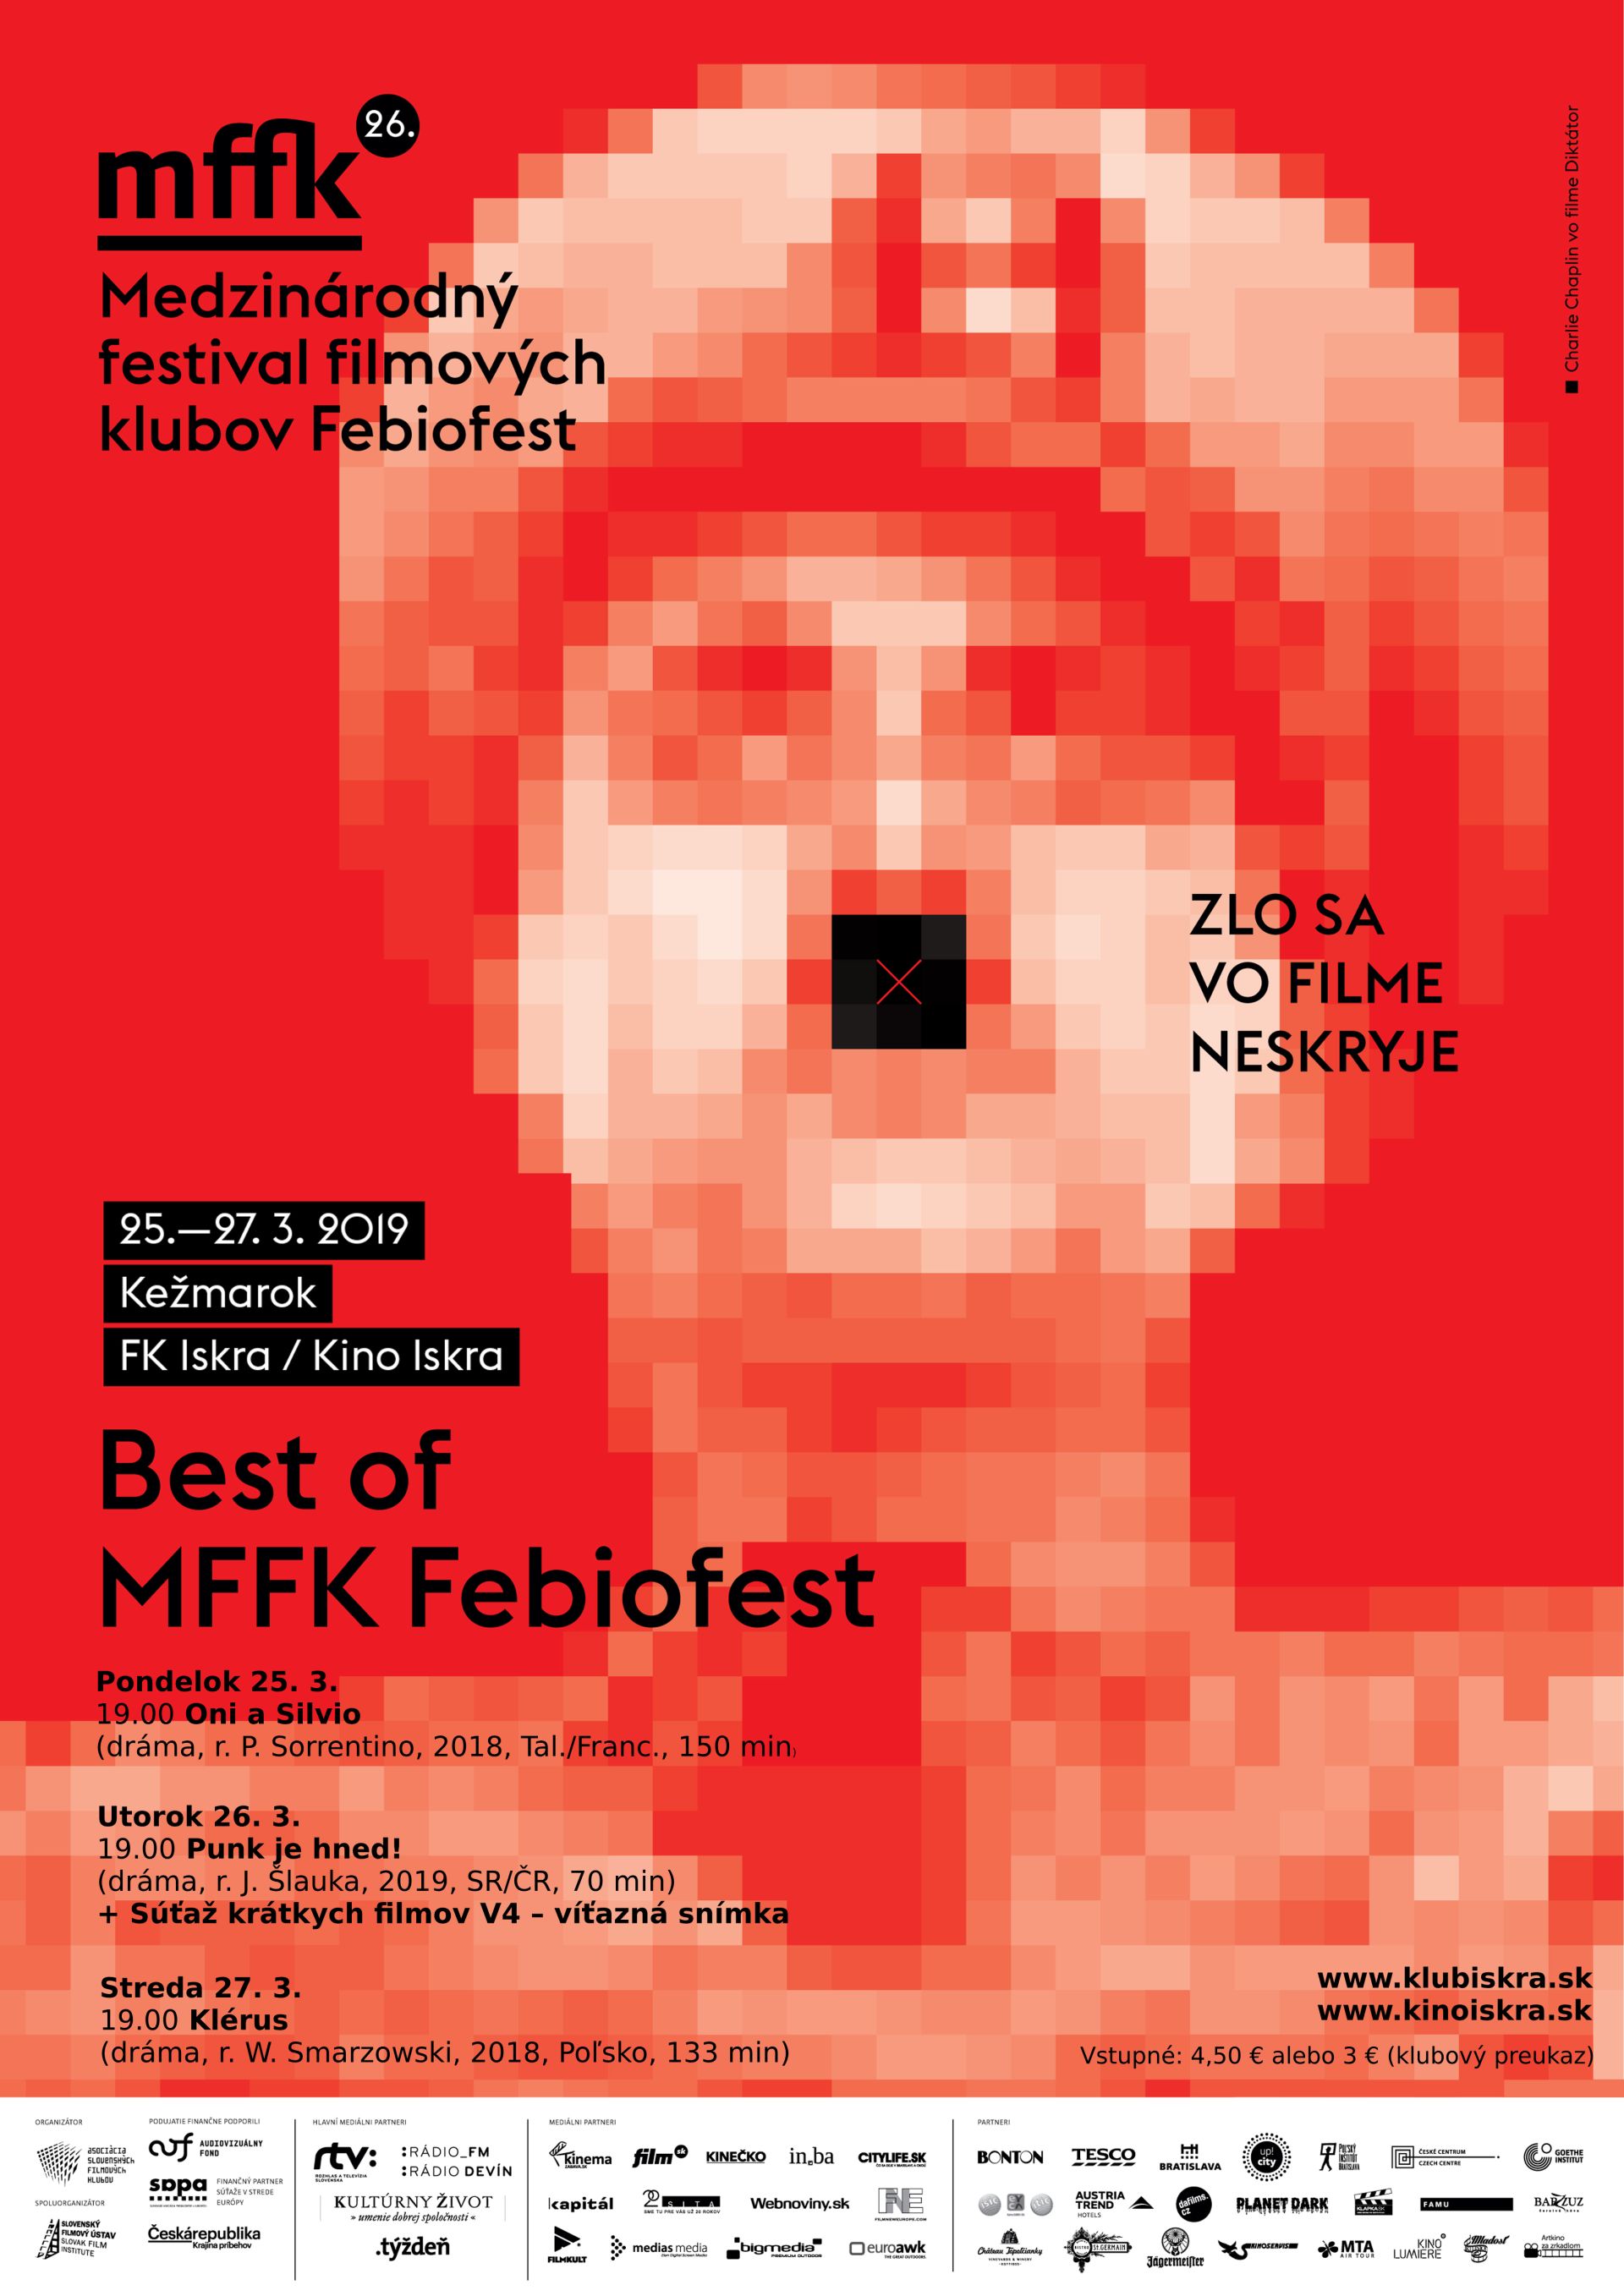 MFFK Febiofest